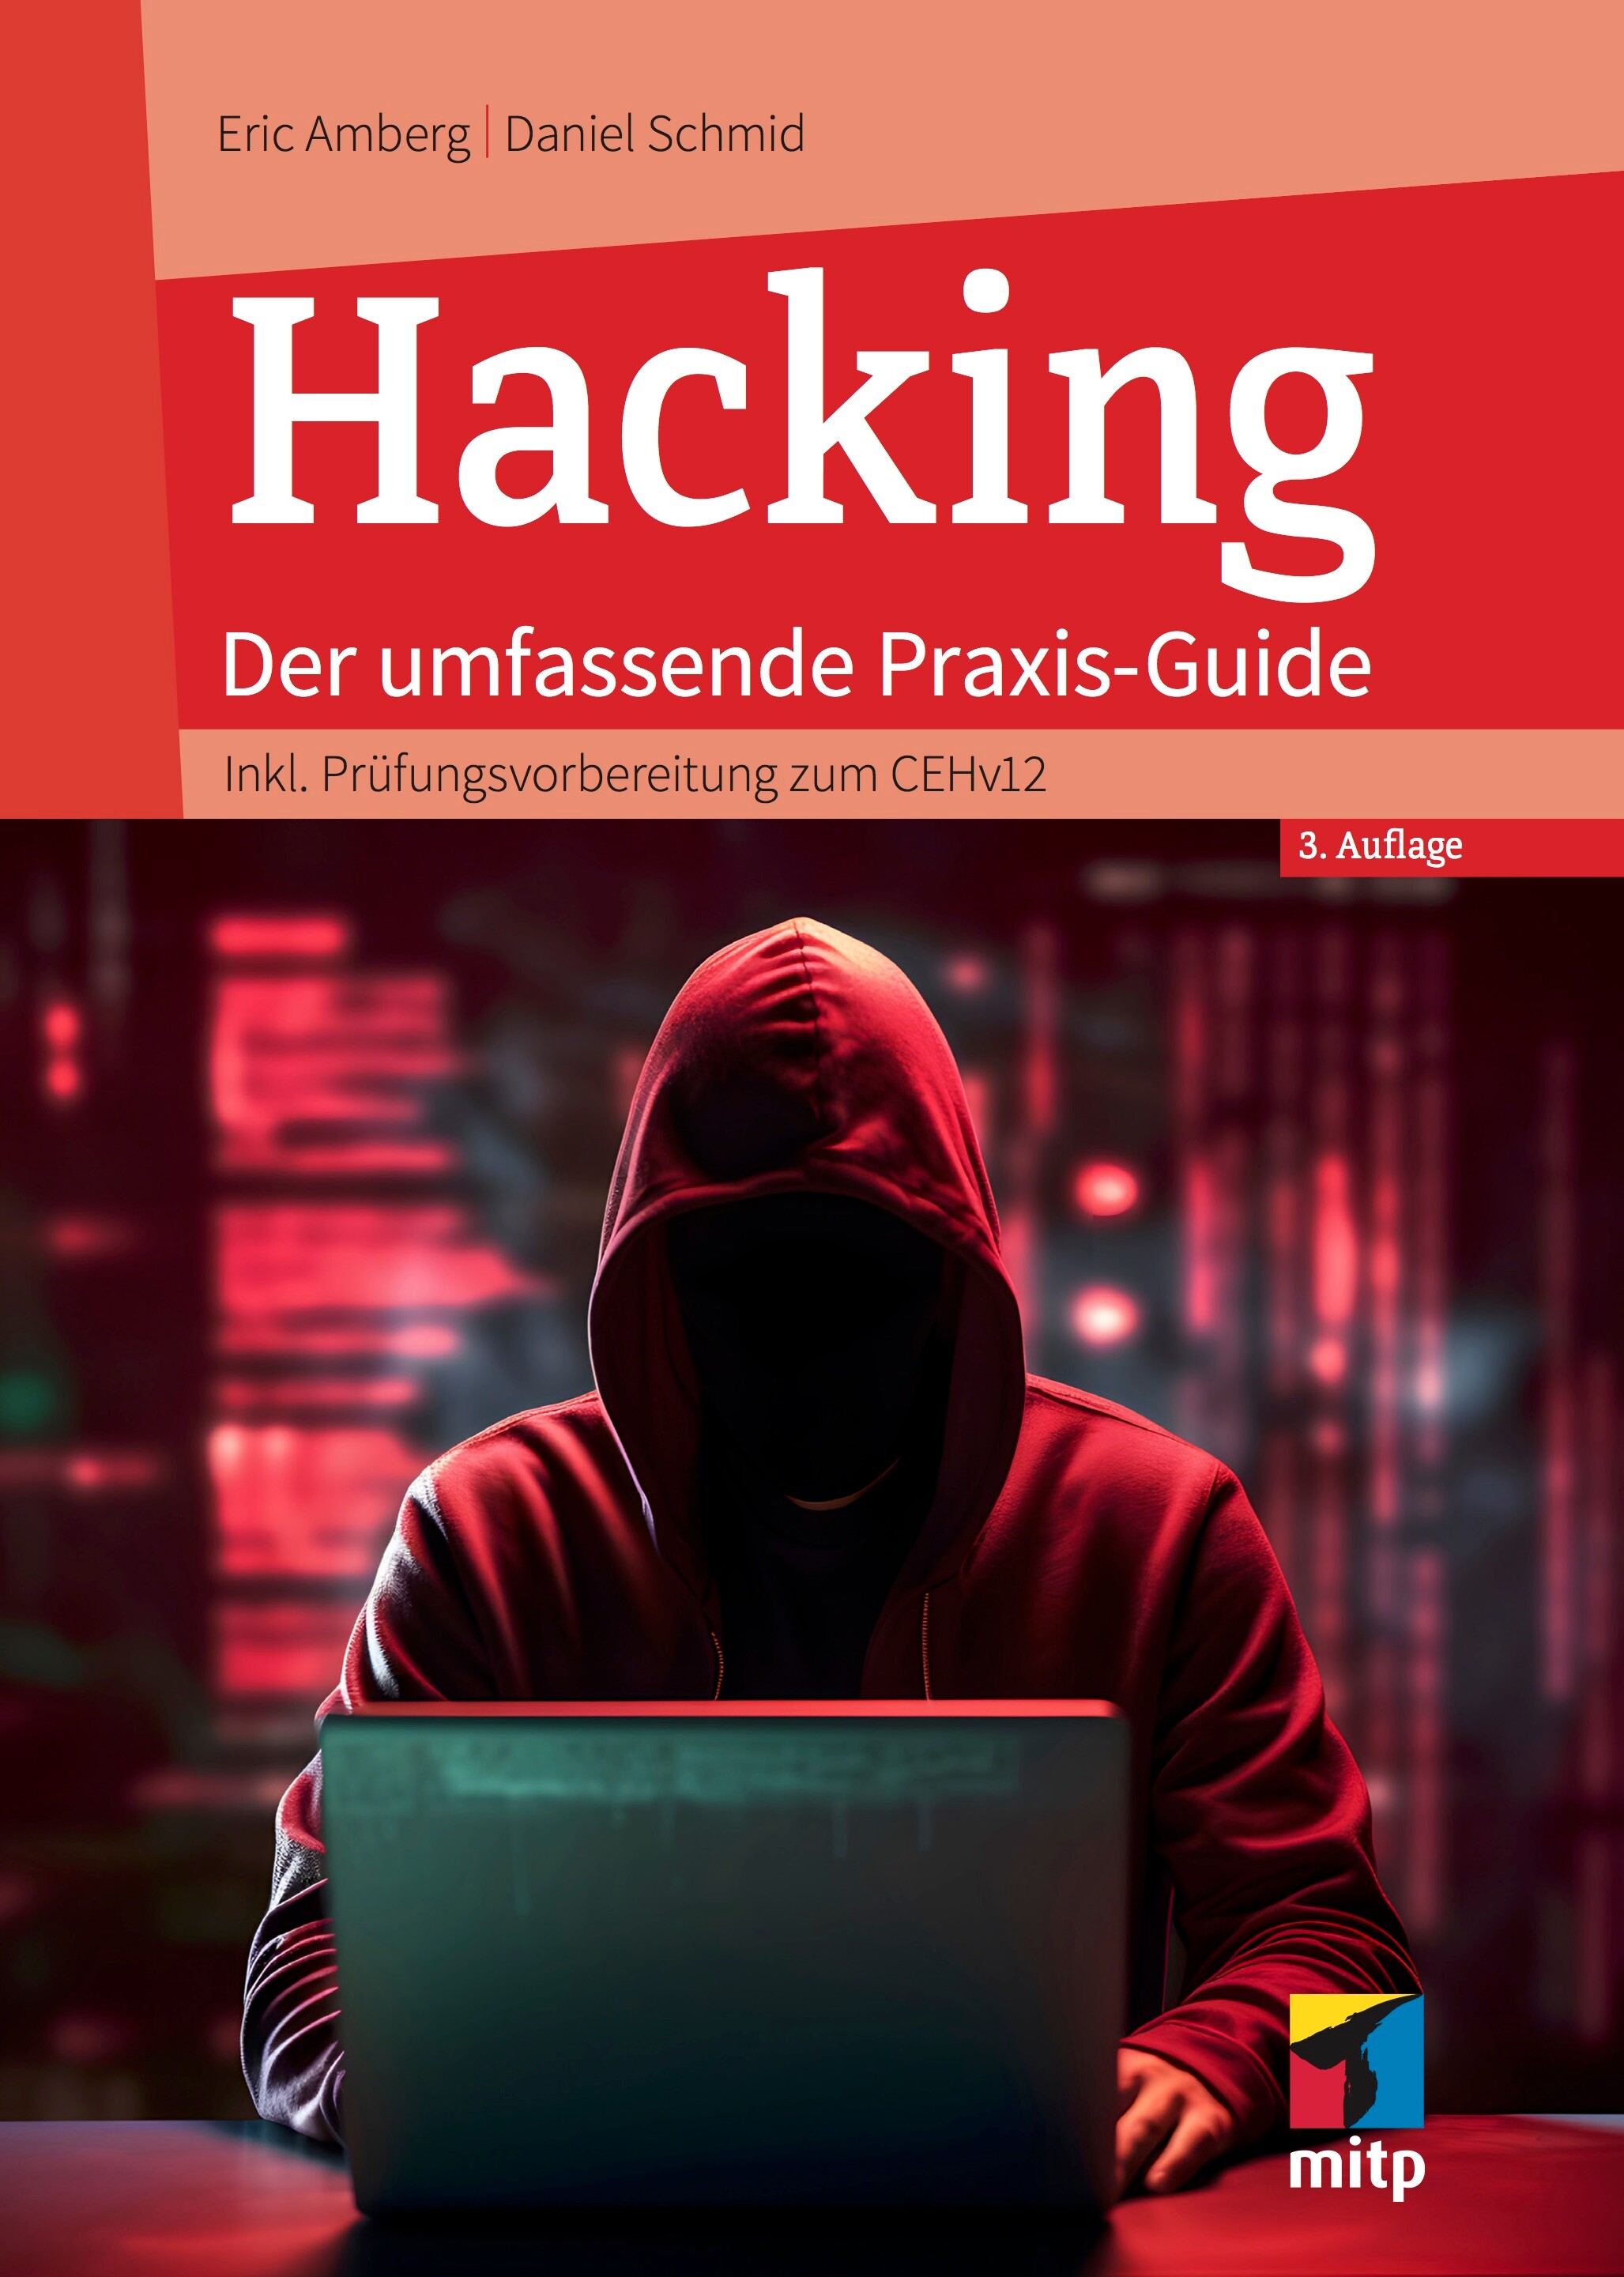 Hacking - Der umfassende Praxis-Guide (3. Auflg.)